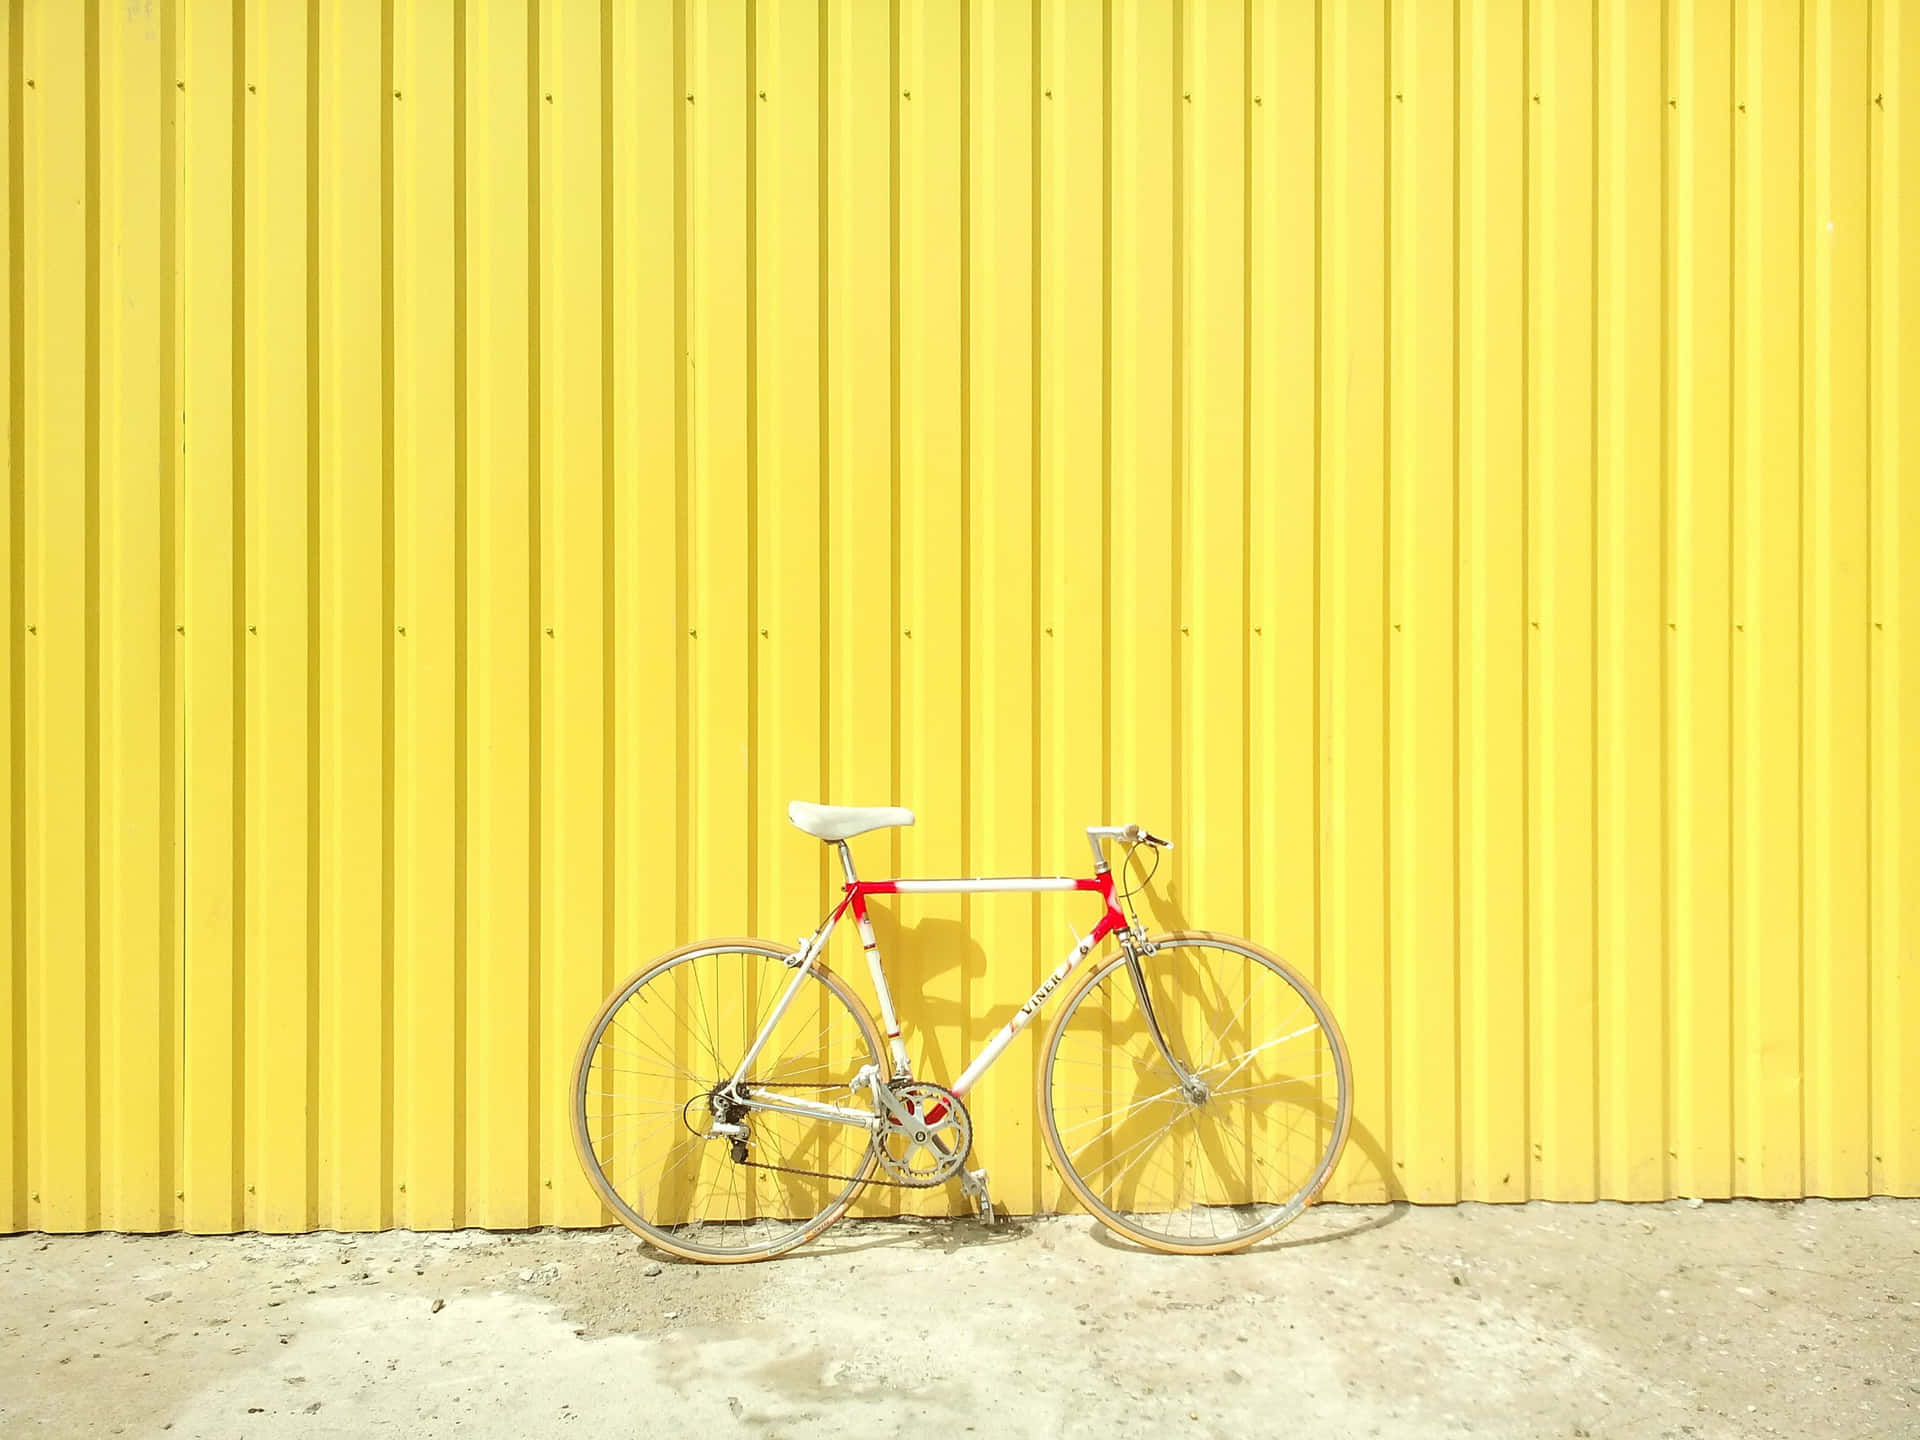 Bicicletasobre Fondo De Color Amarillo Metálico.